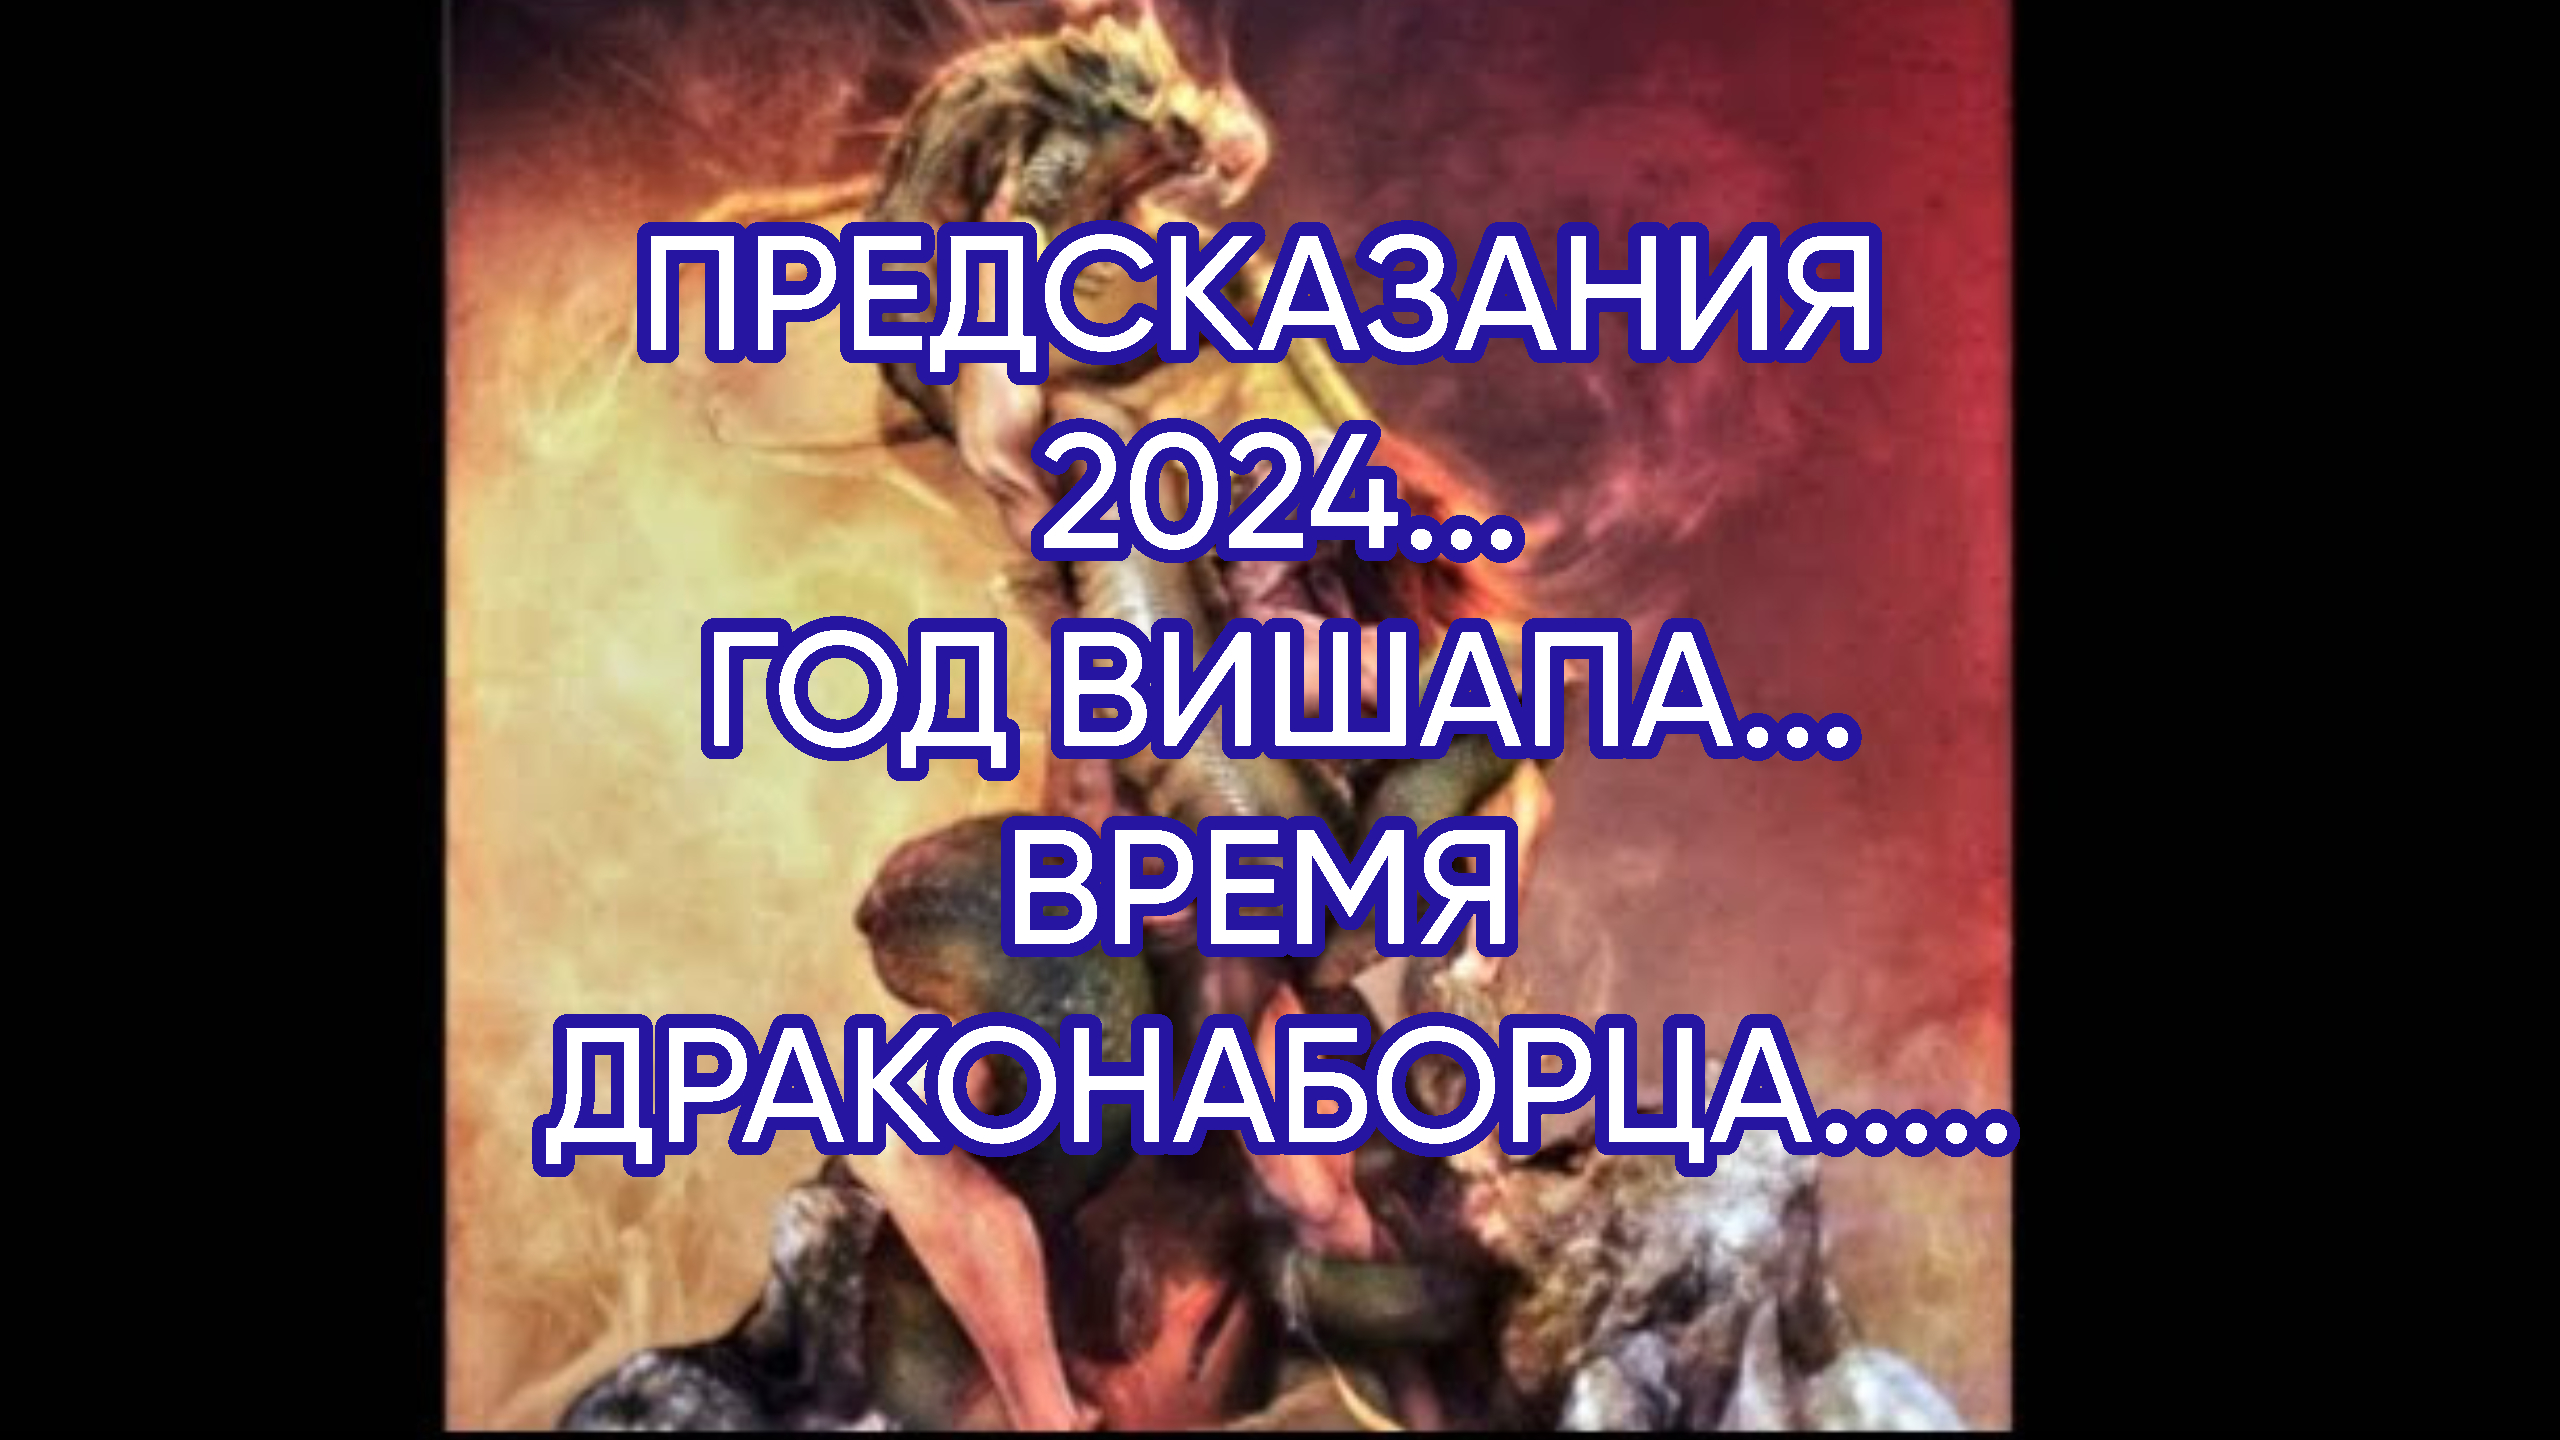 Предсказания на 2024. Пророчества на 2024 год. Предсказания на 2024 год журнала.